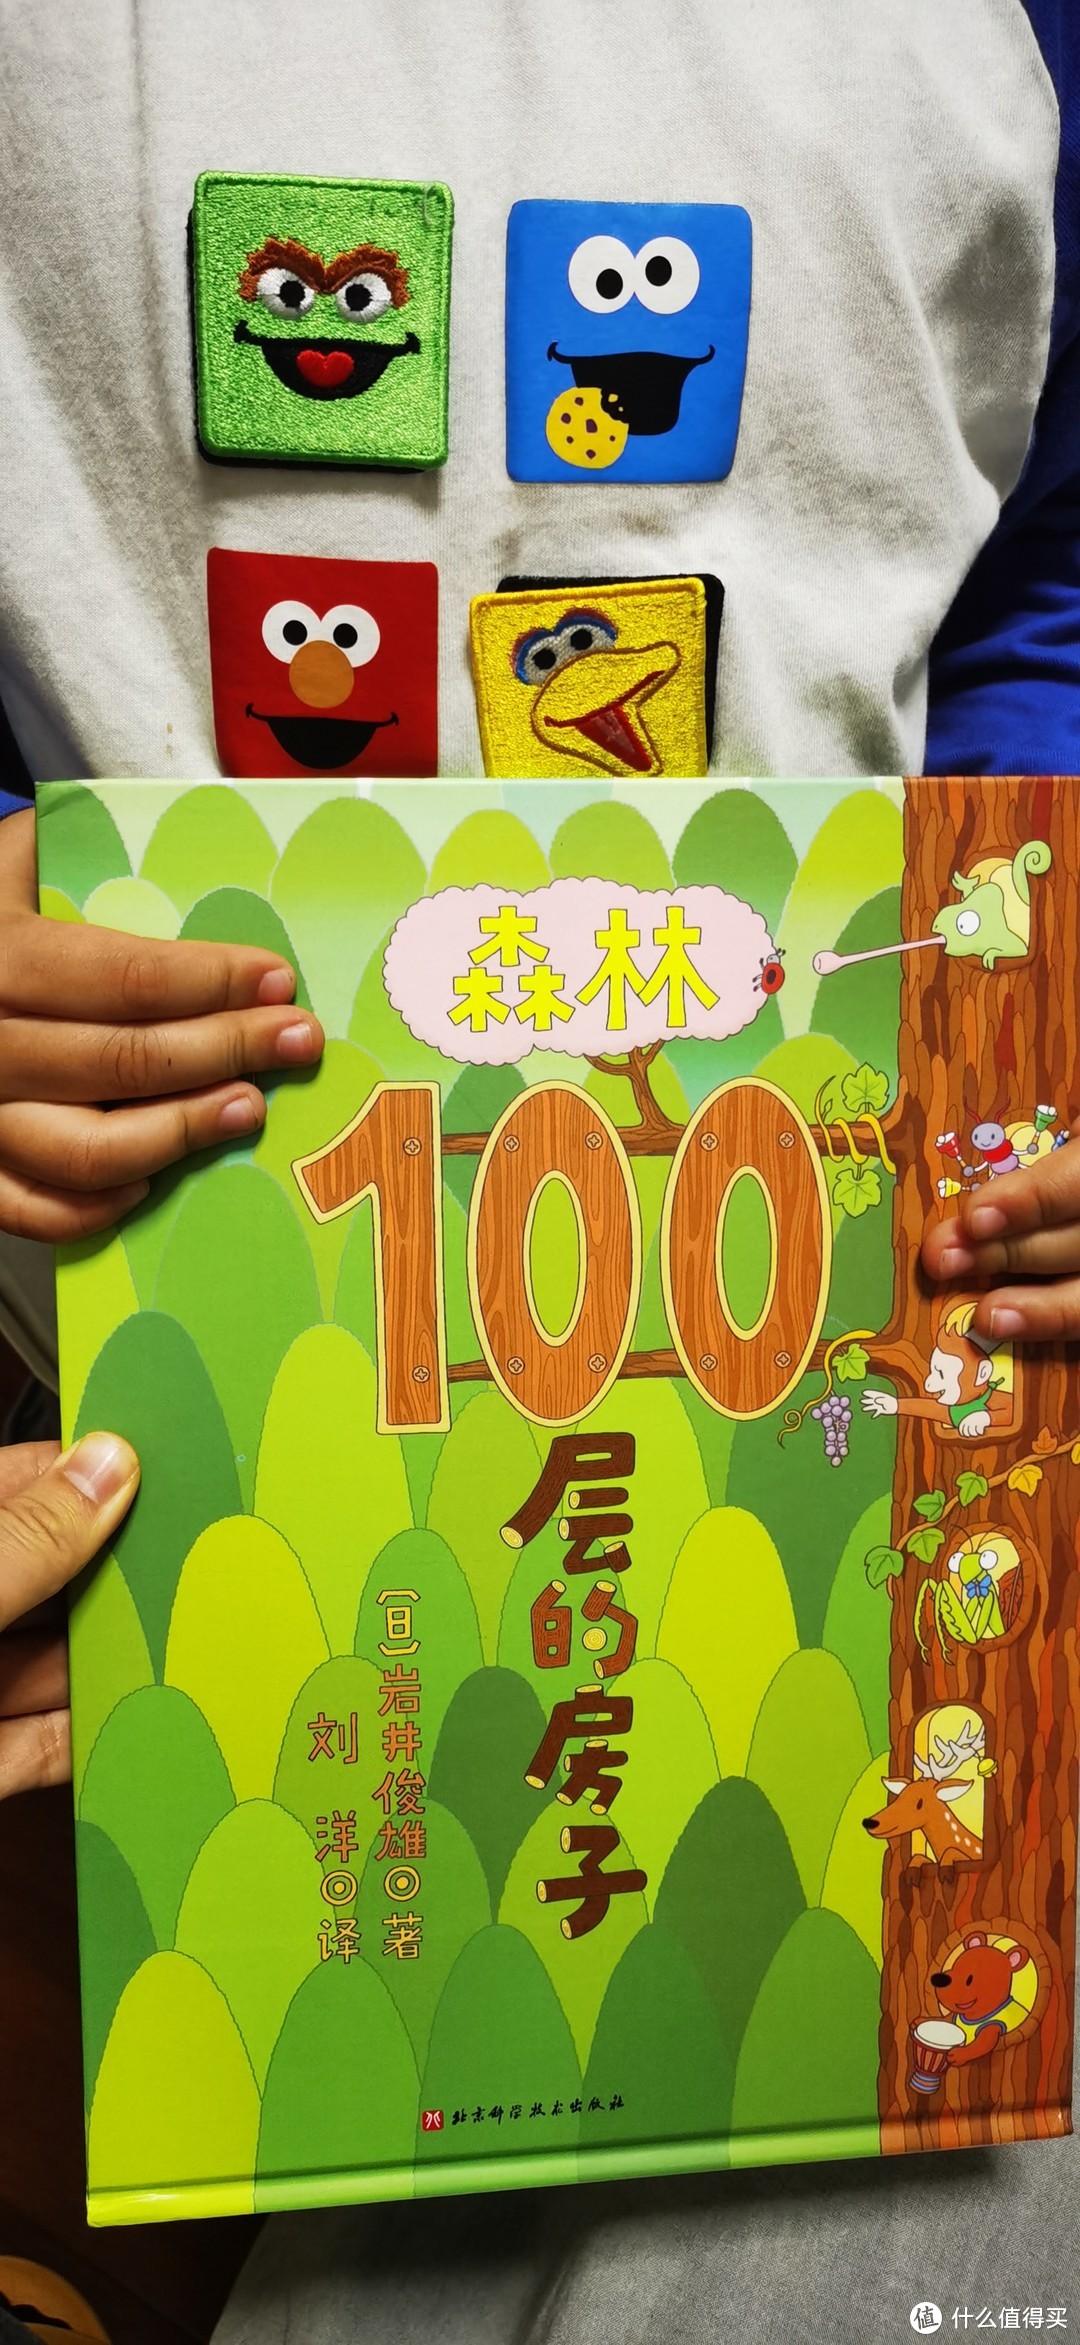 北京科学技术出版社-岩井俊雄系列著作-《100层的房子》之森林篇